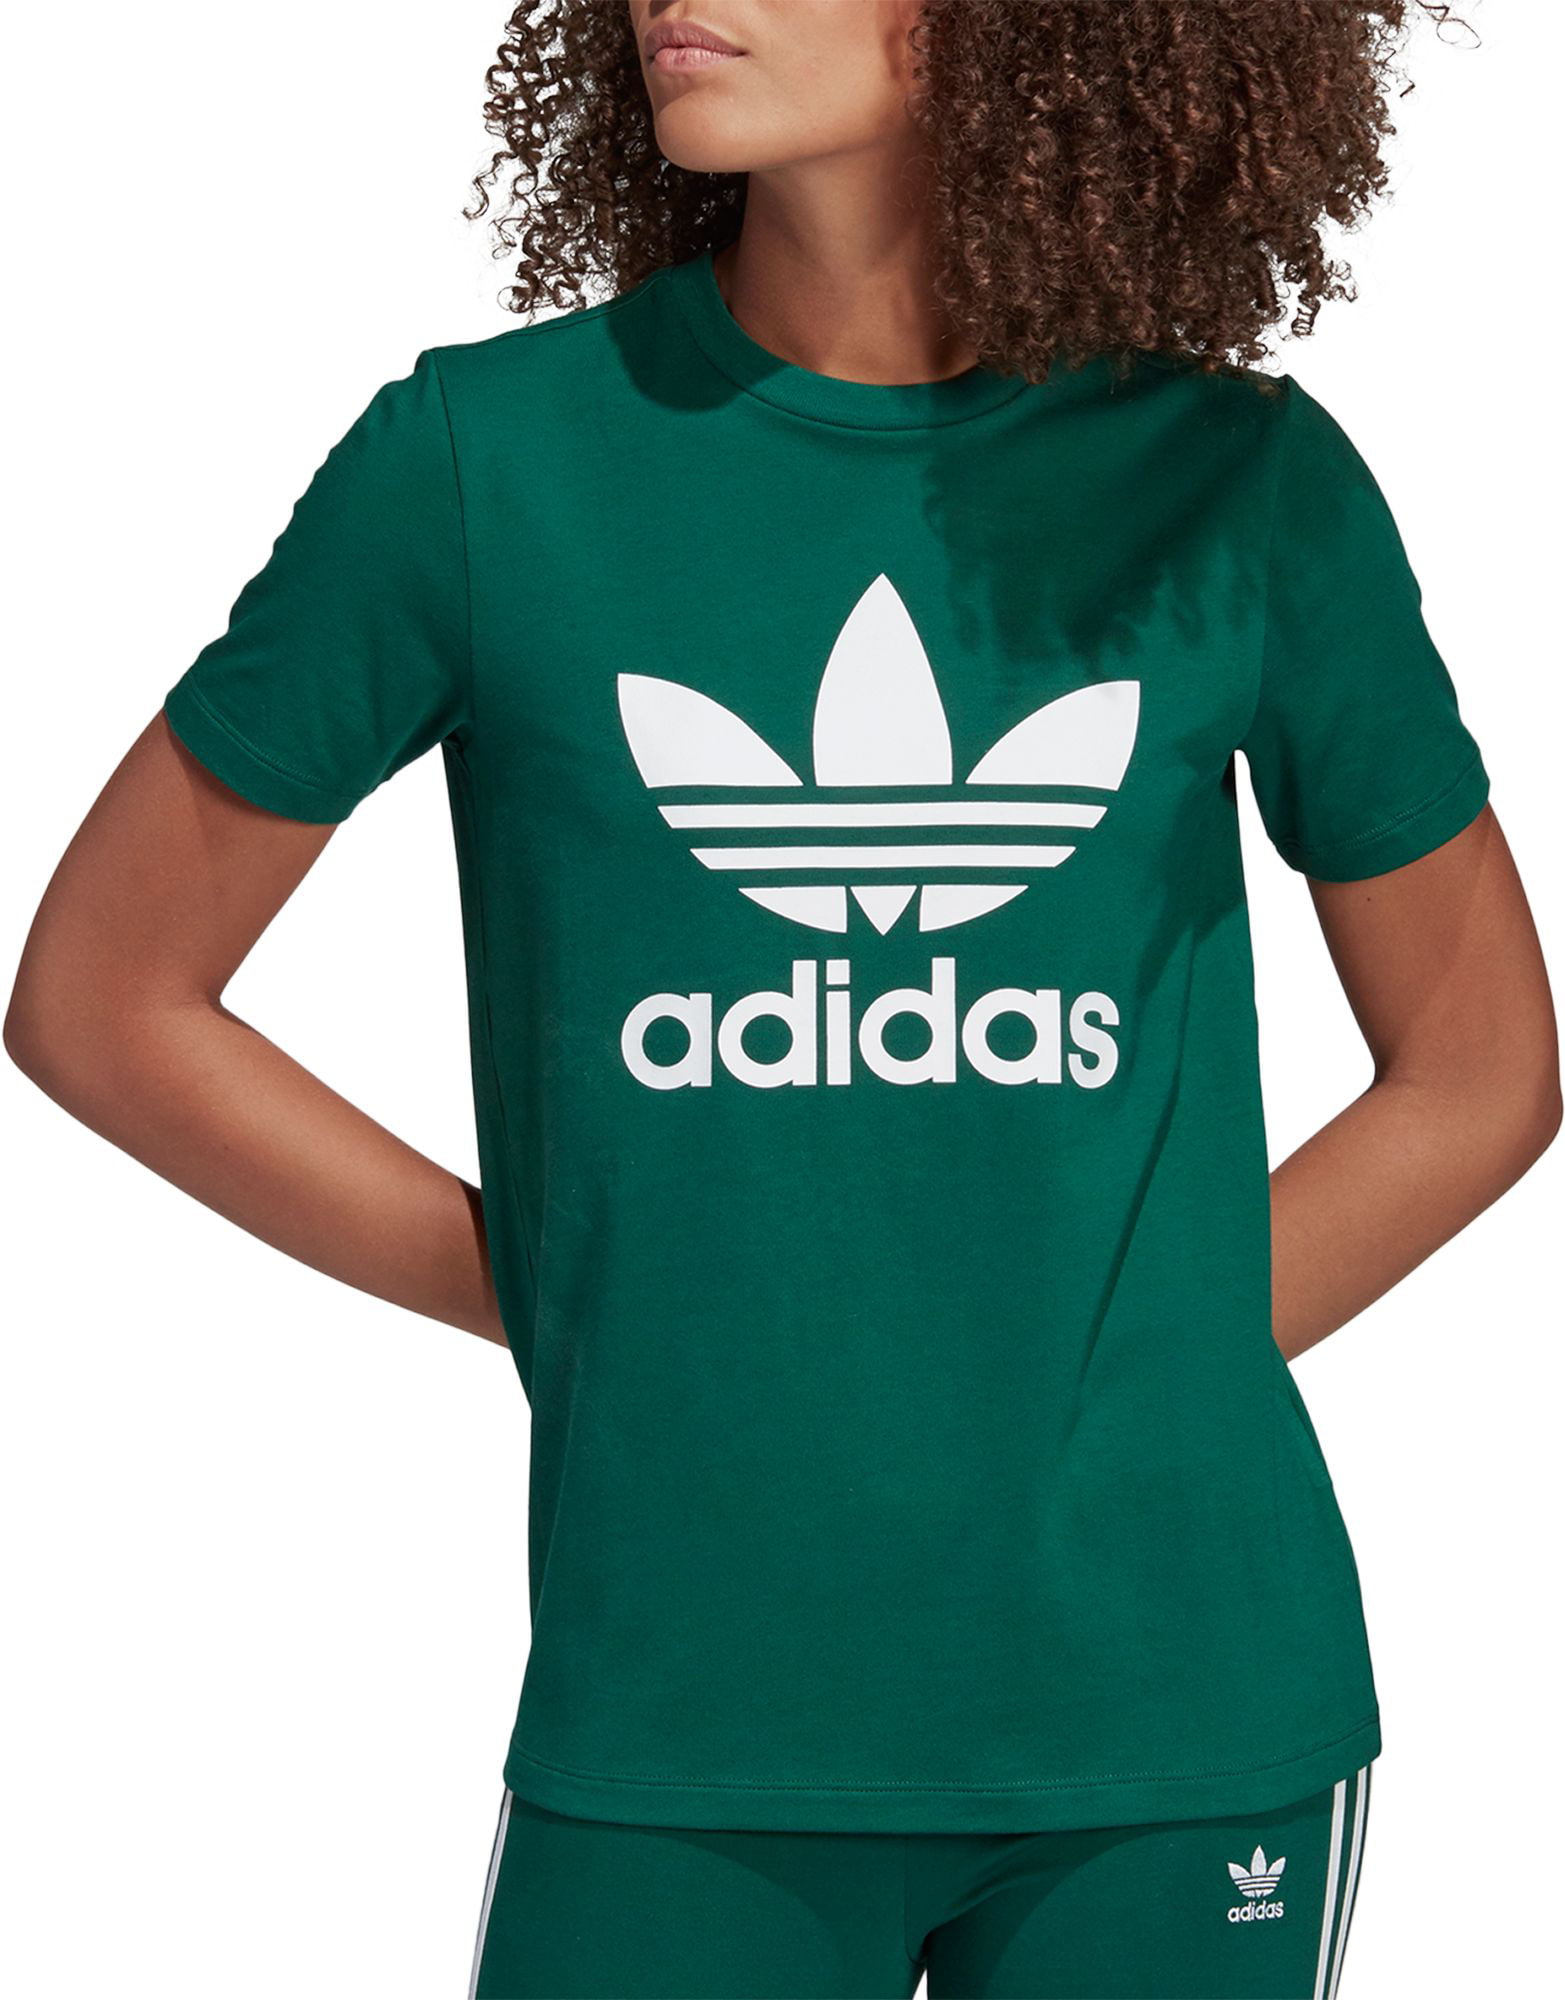 Adidas - adidas Originals Women's Trefoil T-Shirt - Walmart.com